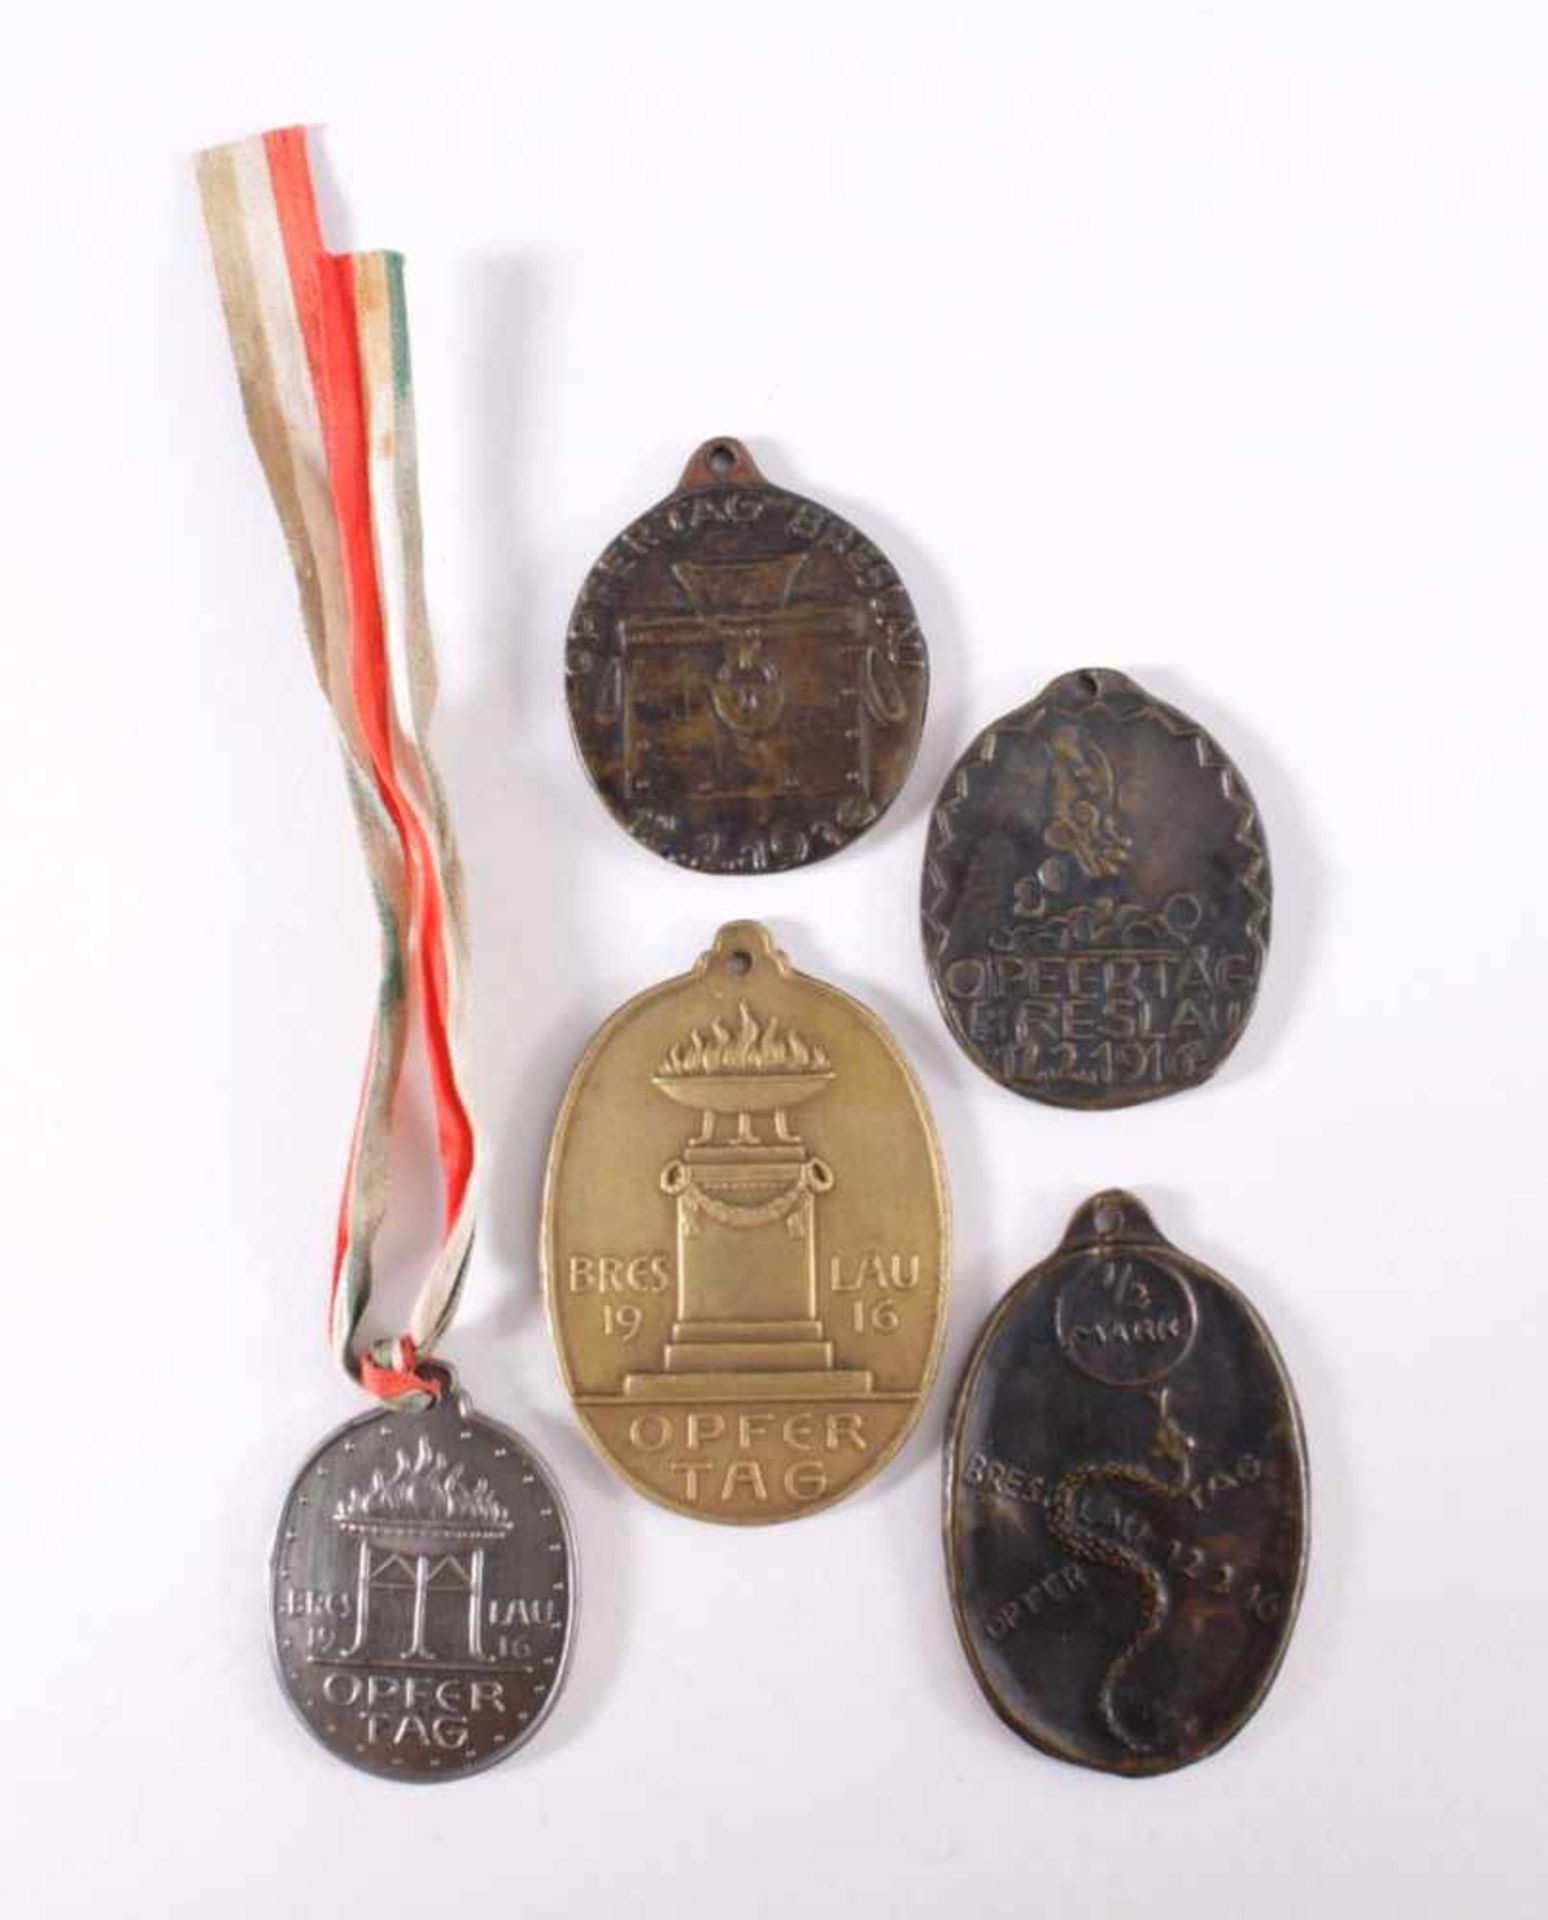 5 Medaillen Opfertag Breslau 1916, verschiedene Motive1x Opfertag Breslau 12.2.16, 1/2 Mark, Motiv